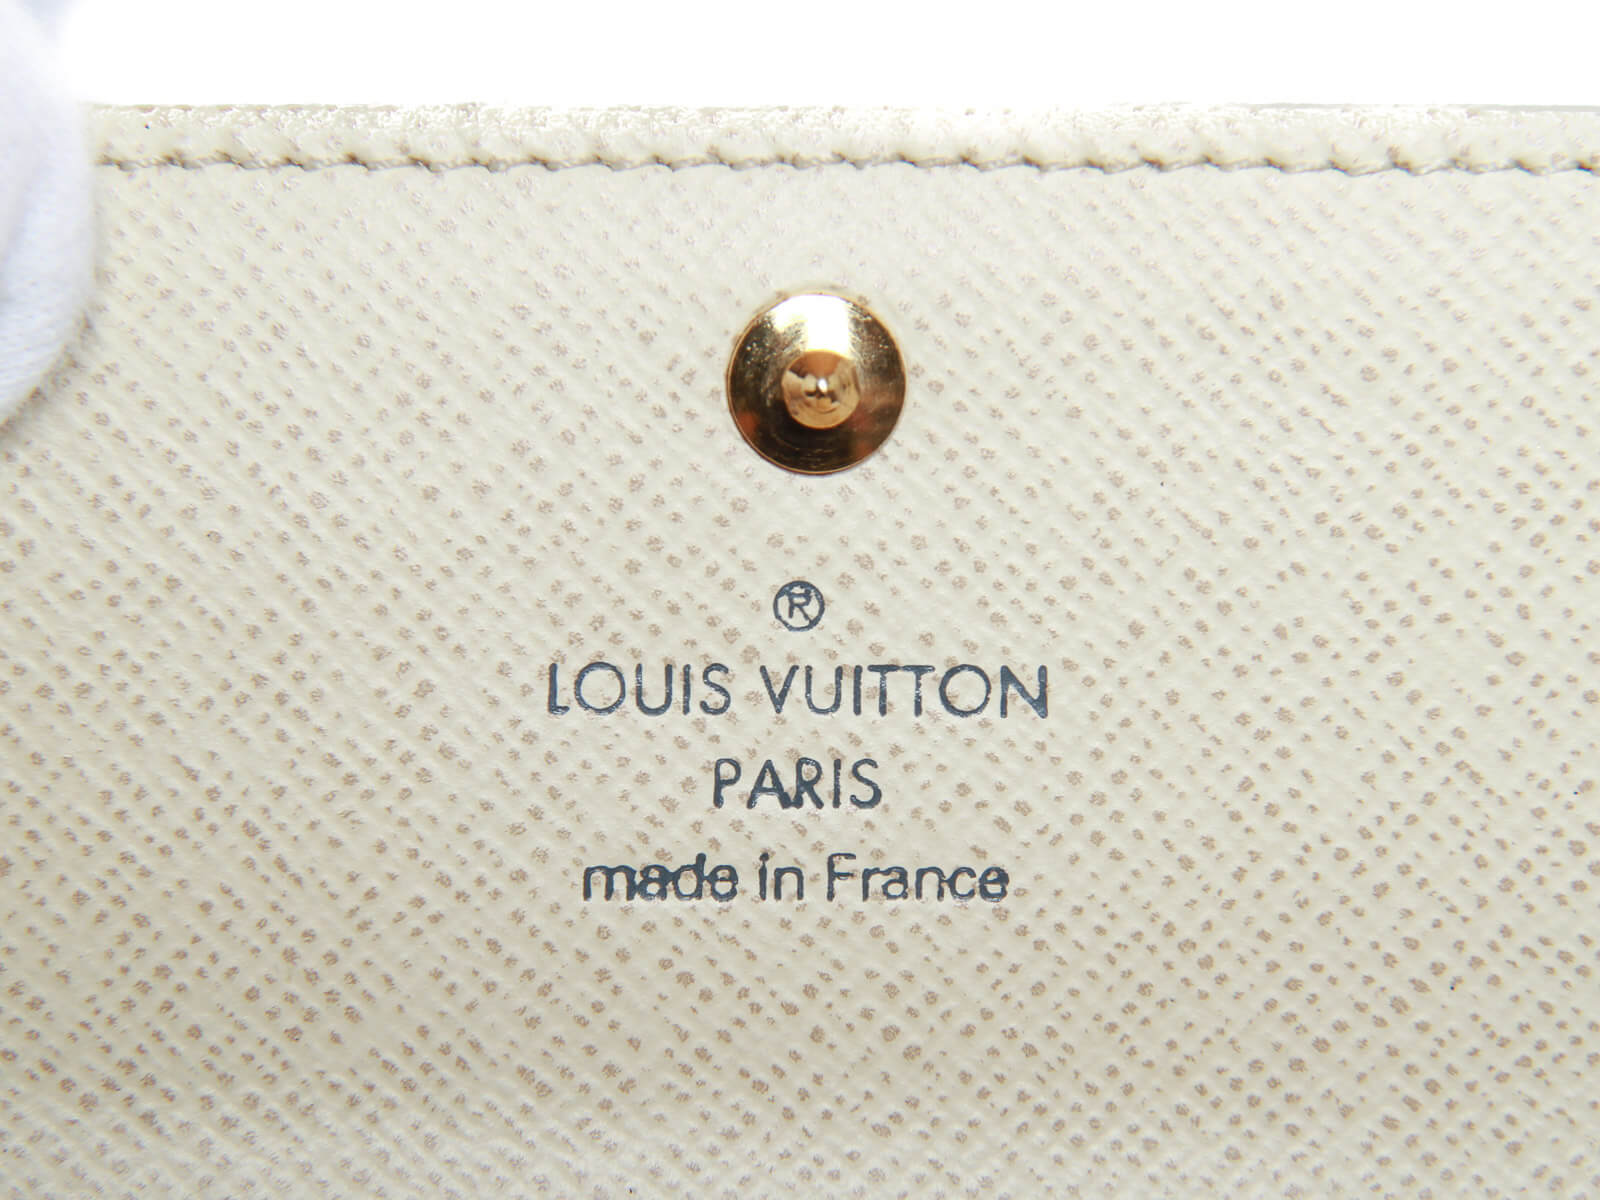 Louis Vuitton 4 Key Holder Damier Azur Canvas – l'Étoile de Saint